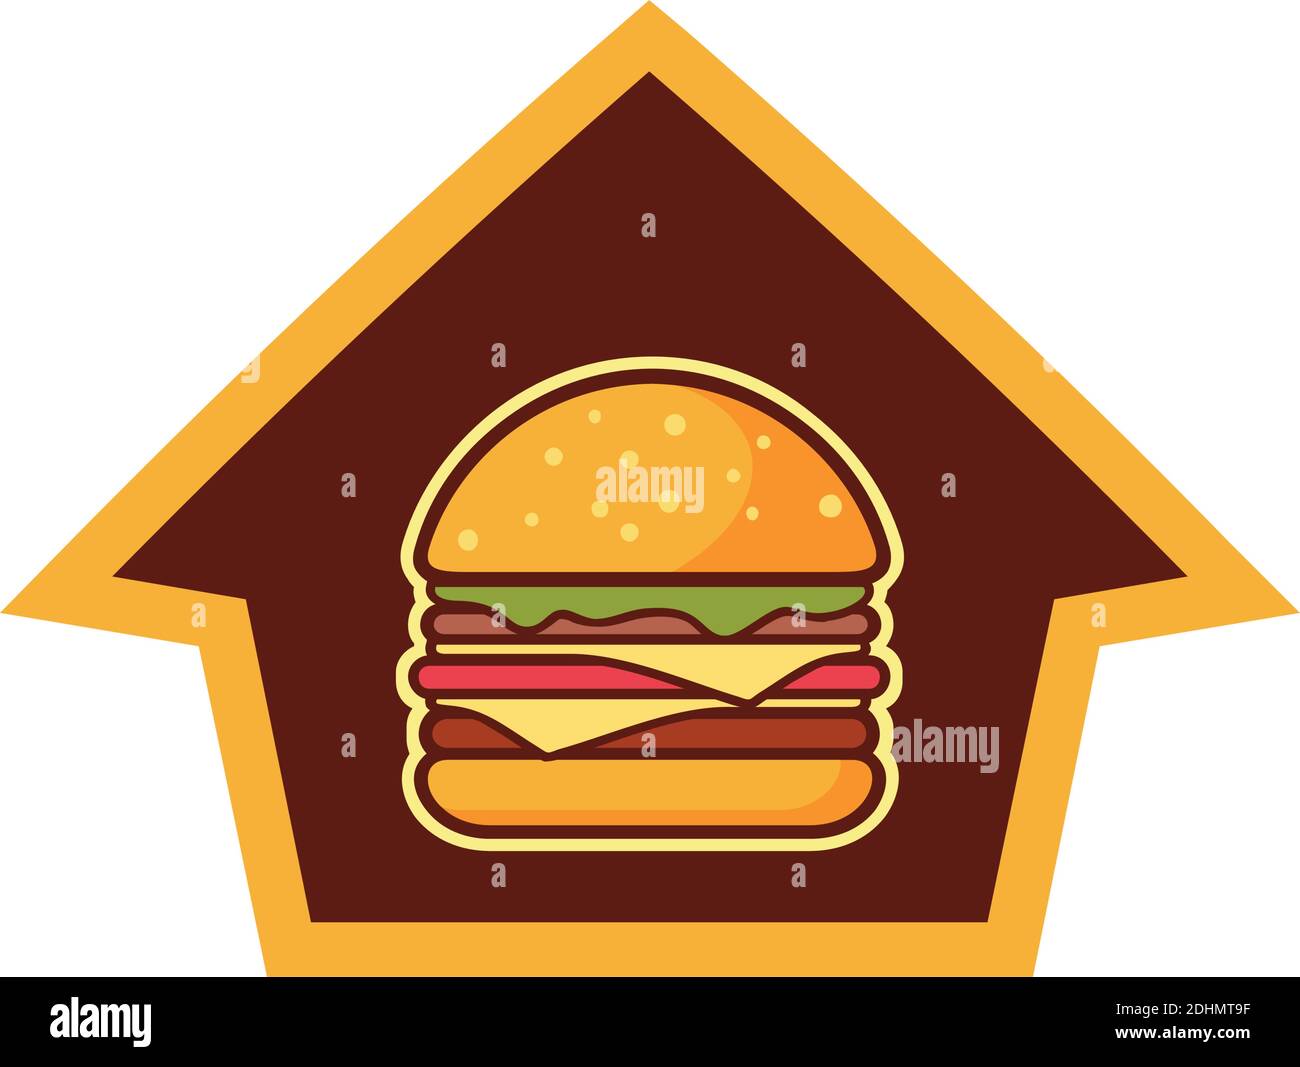 burger home flat icon flat logo vector design concept Stock Vector